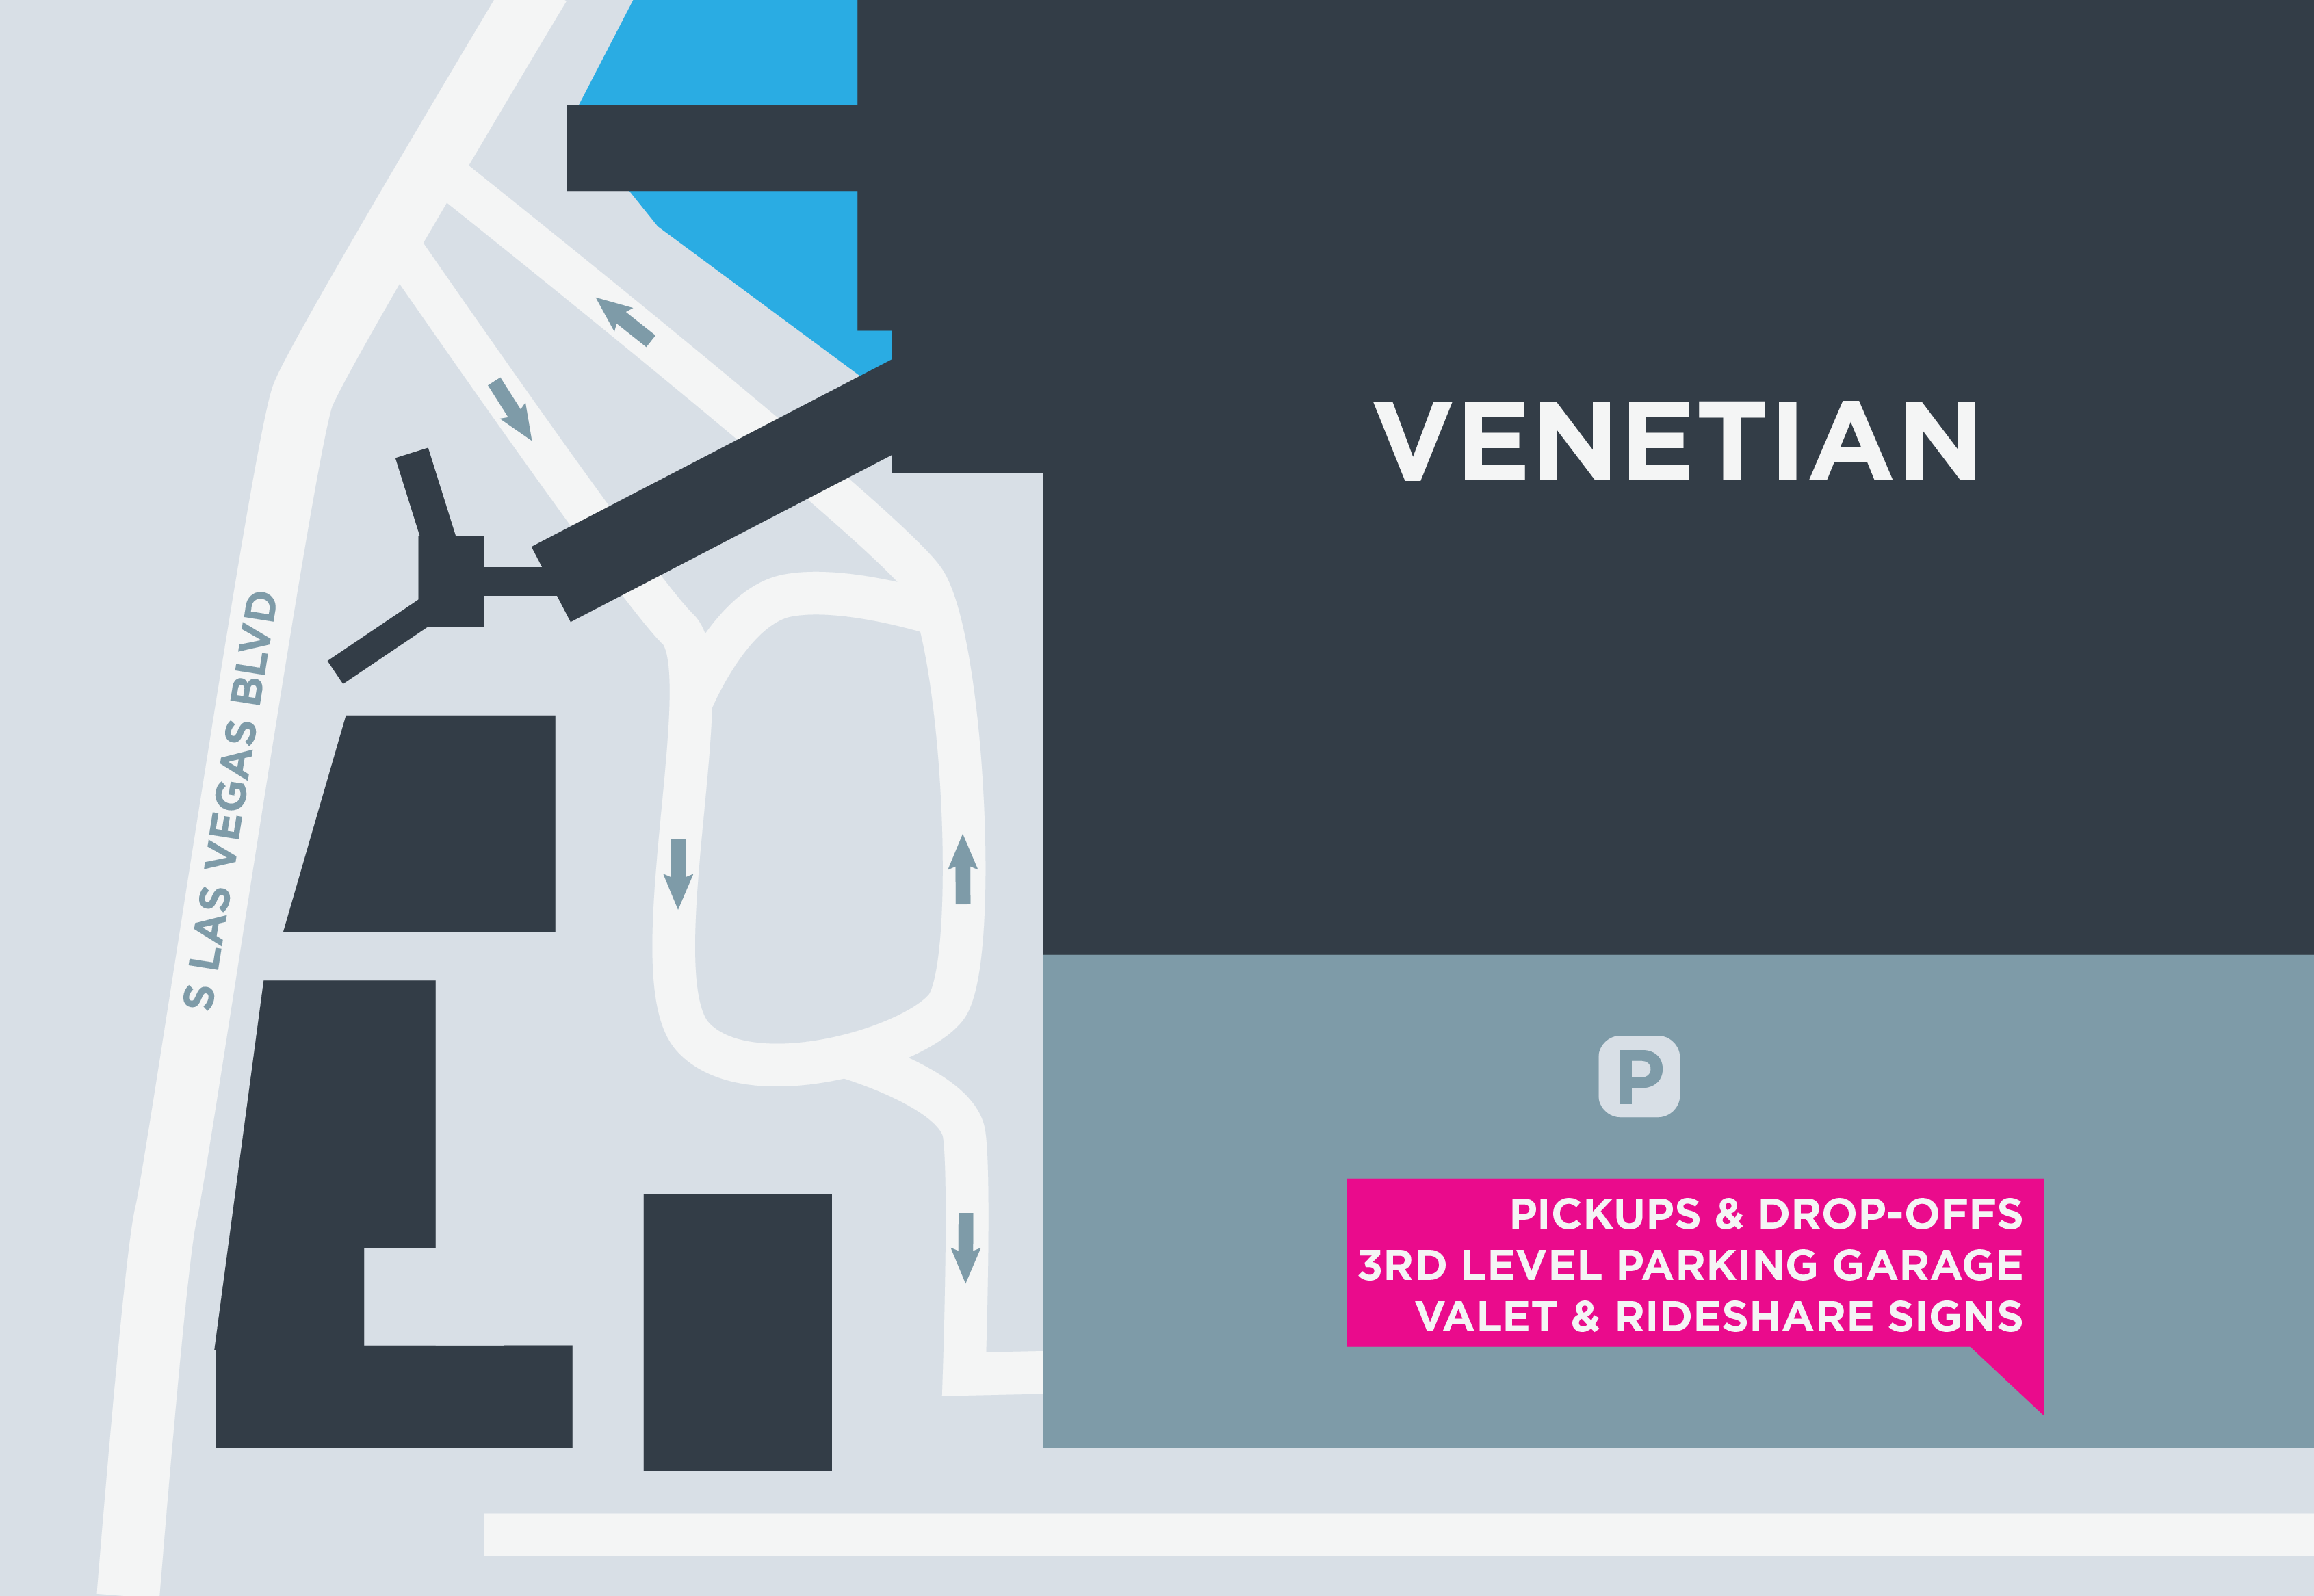 Esta imagen muestra un mapa del Venetian, incluidas las áreas para recoger y dejar pasajeros.